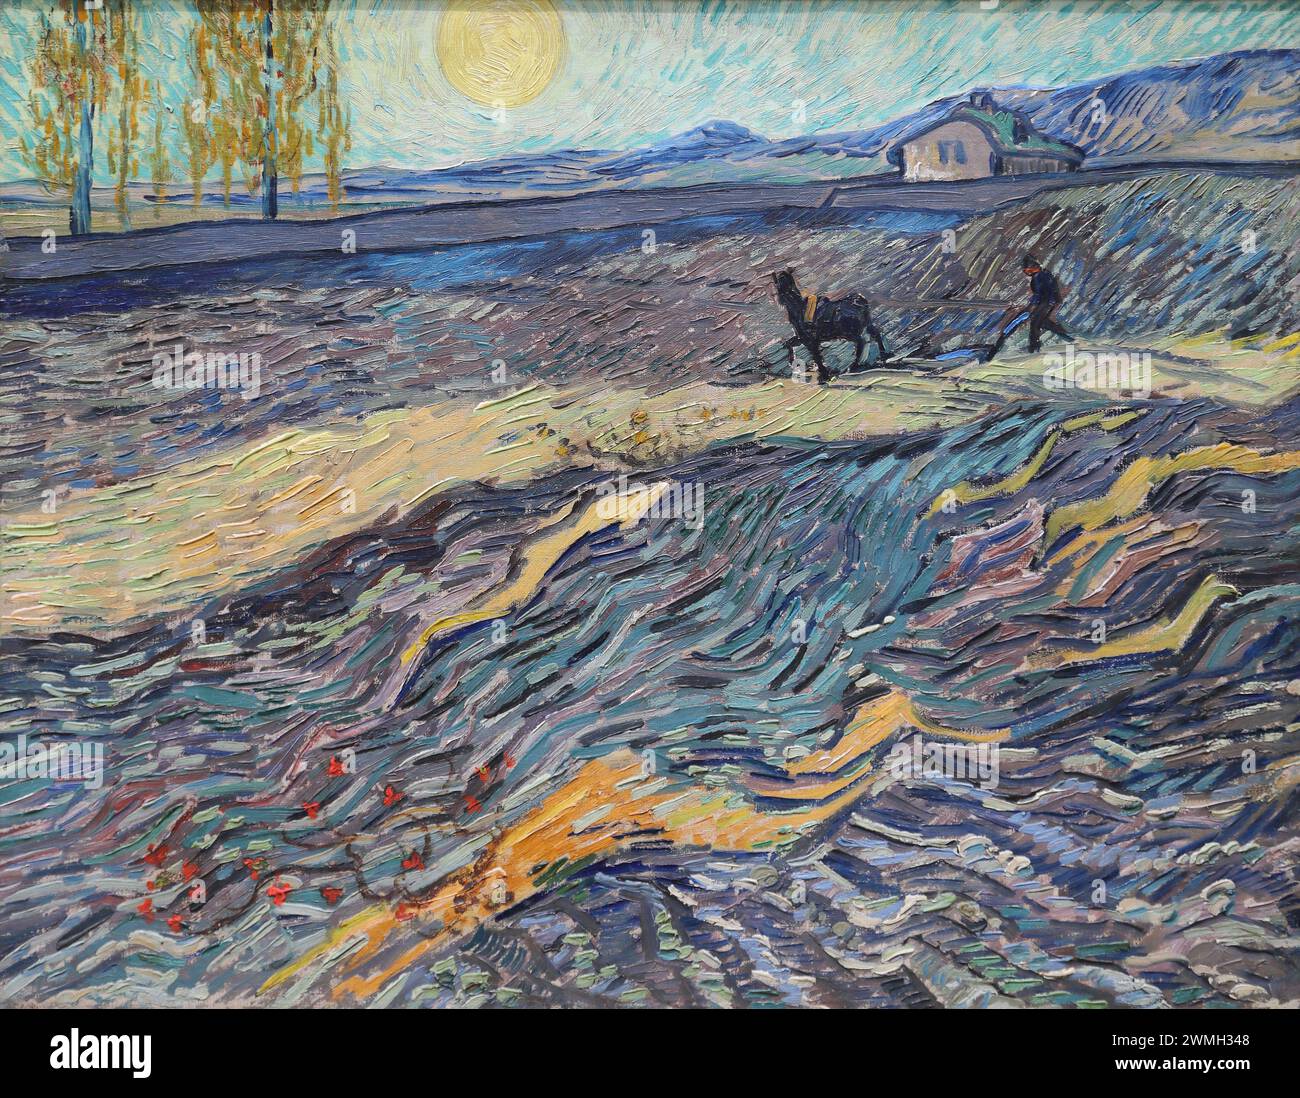 Landschaft mit Pflugzeug des niederländischen postimpressionistischen Malers Vincent van Gogh in der National Gallery, London, Großbritannien Stockfoto